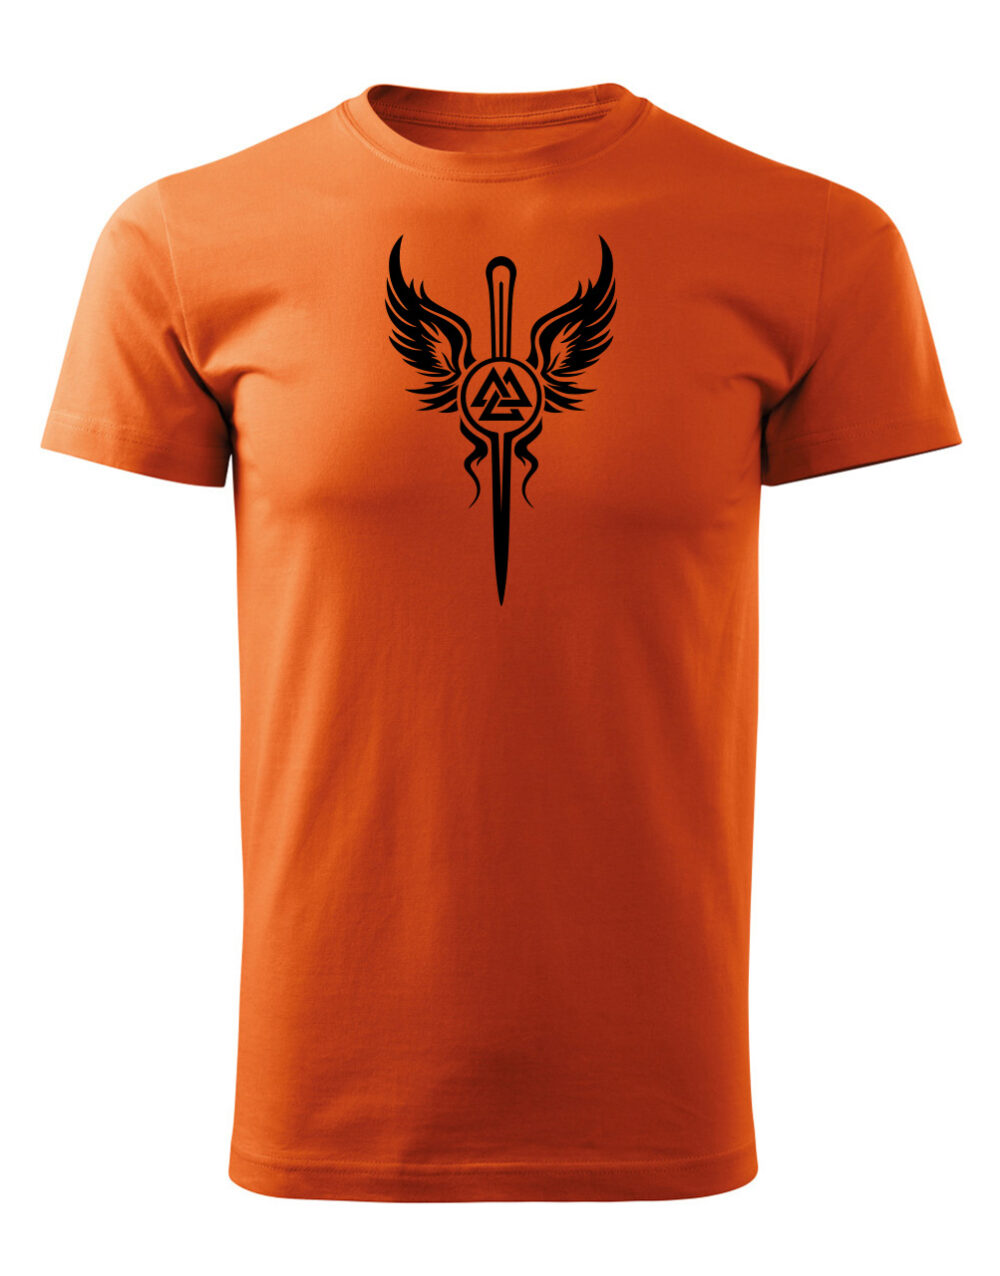 Pánské tričko s potiskem Valkýra znak oranžová